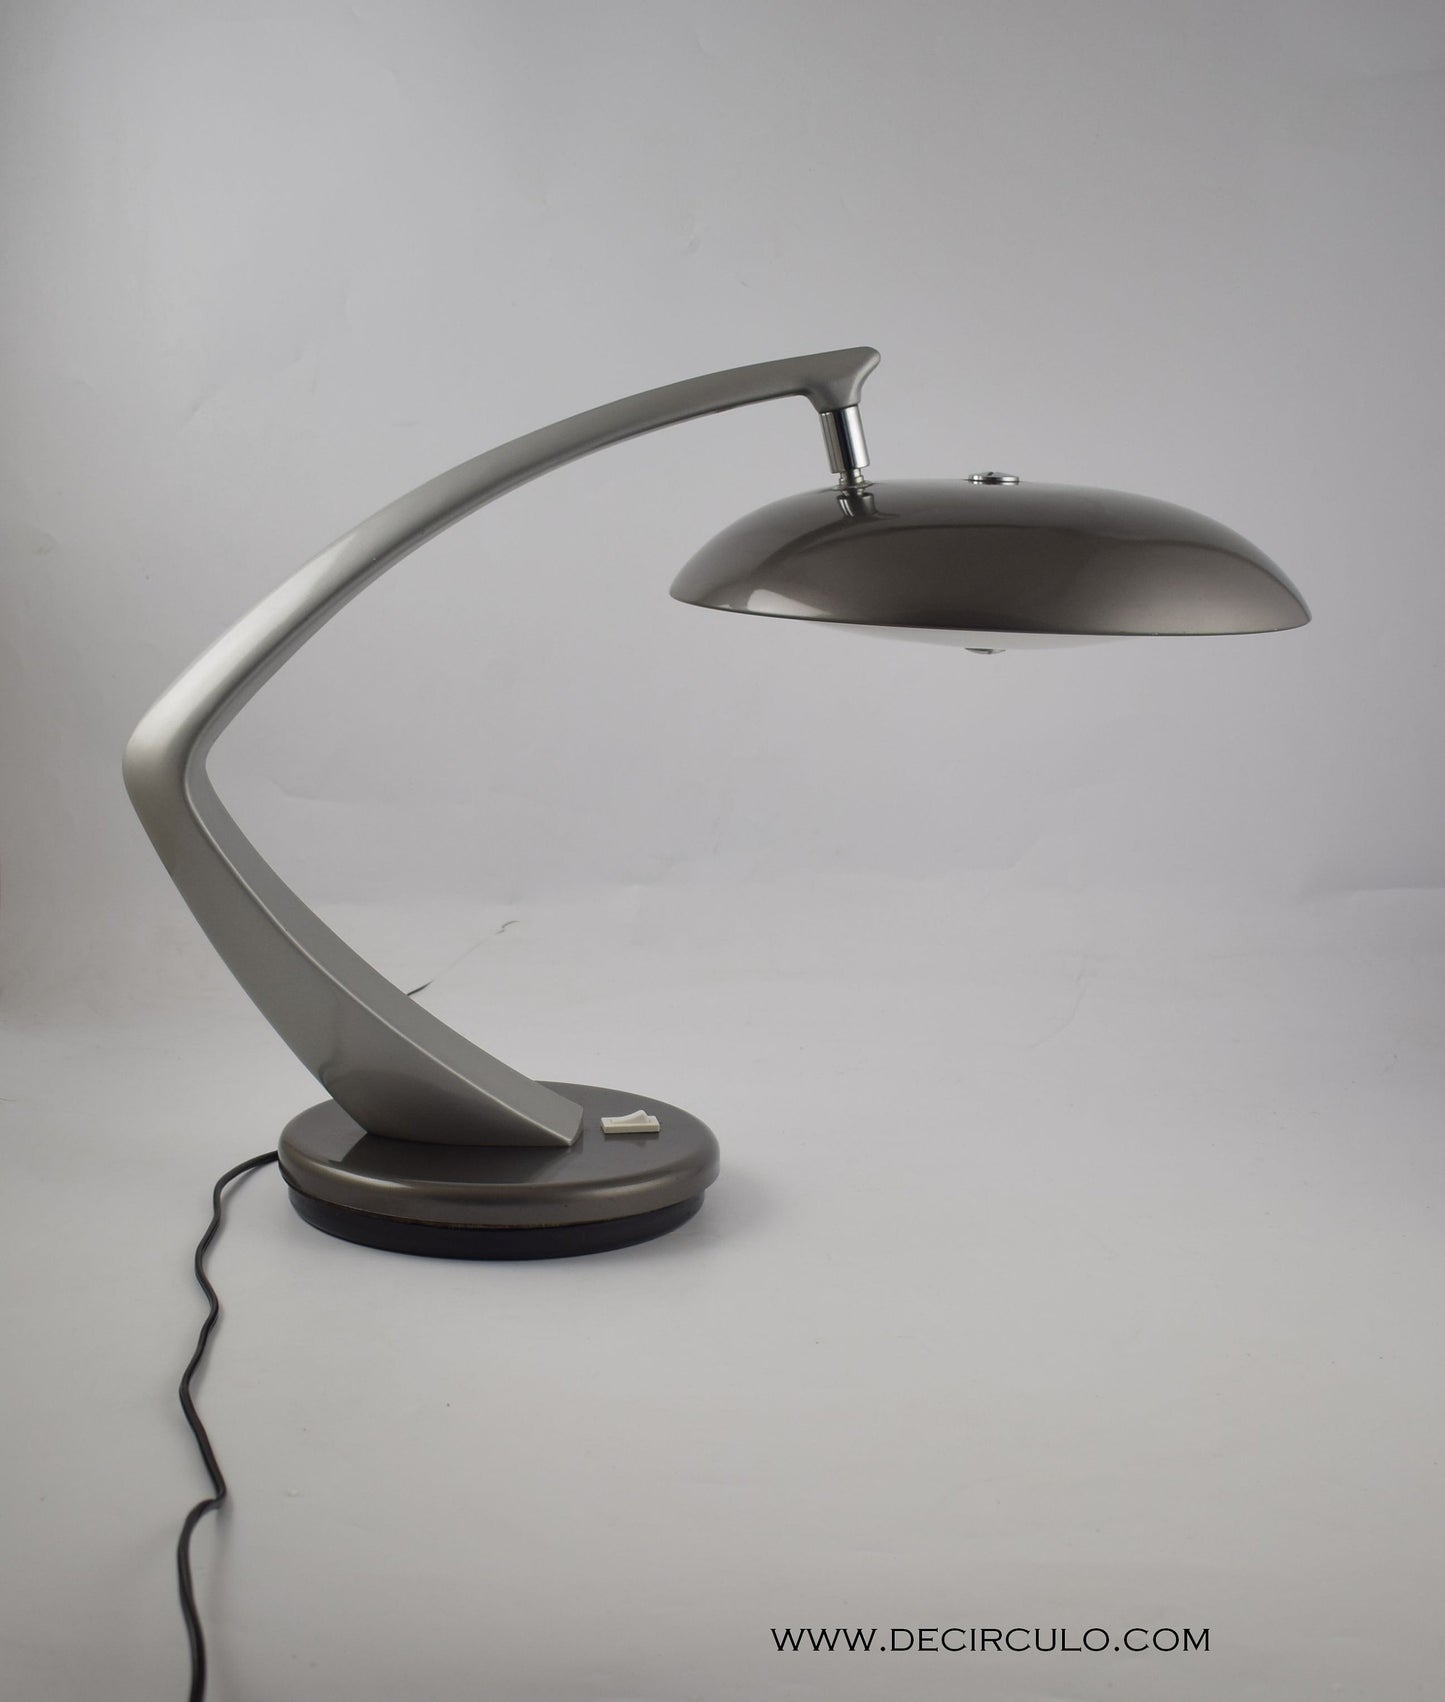 Lámpara de mesa de escritorio Fase Boomerang Madrid España. Preciosa lámpara de los años 60 y principios de los 70